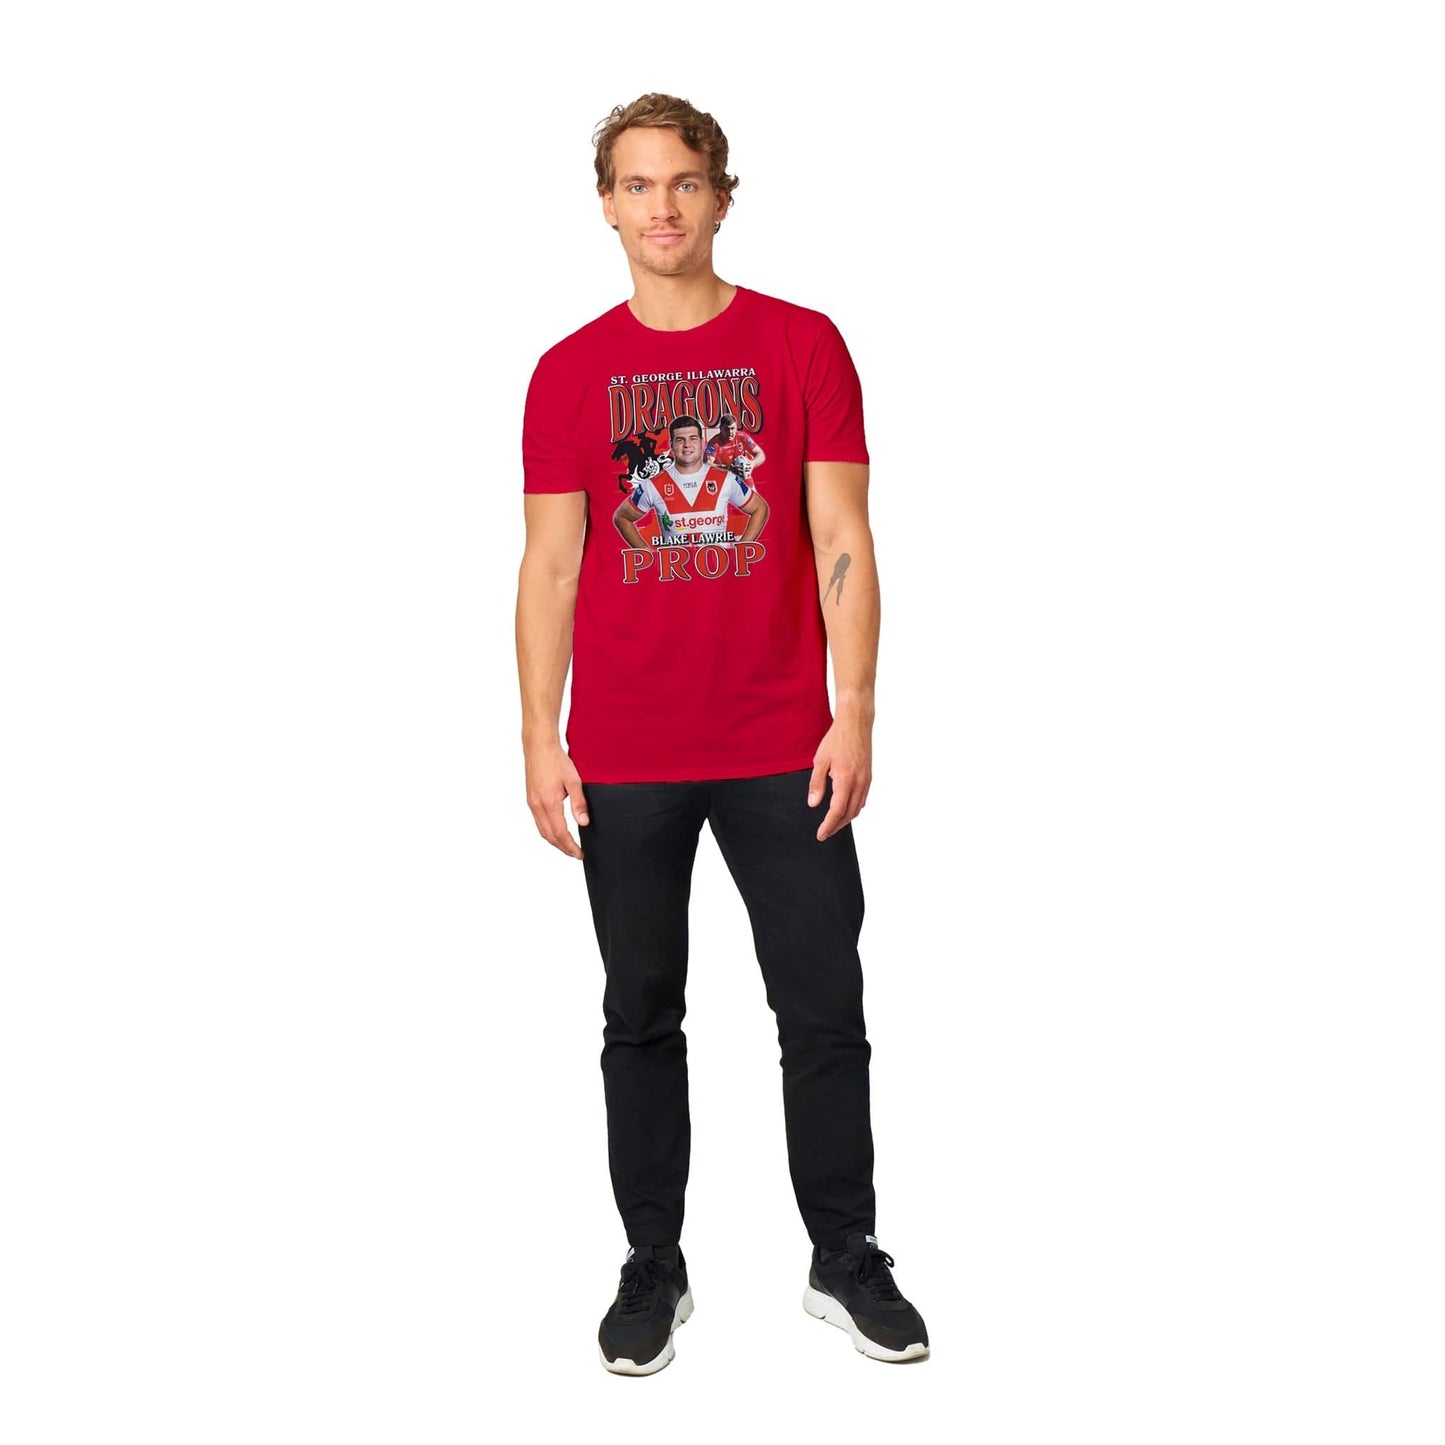 Blake Lawrie T-shirt Australia Online Color